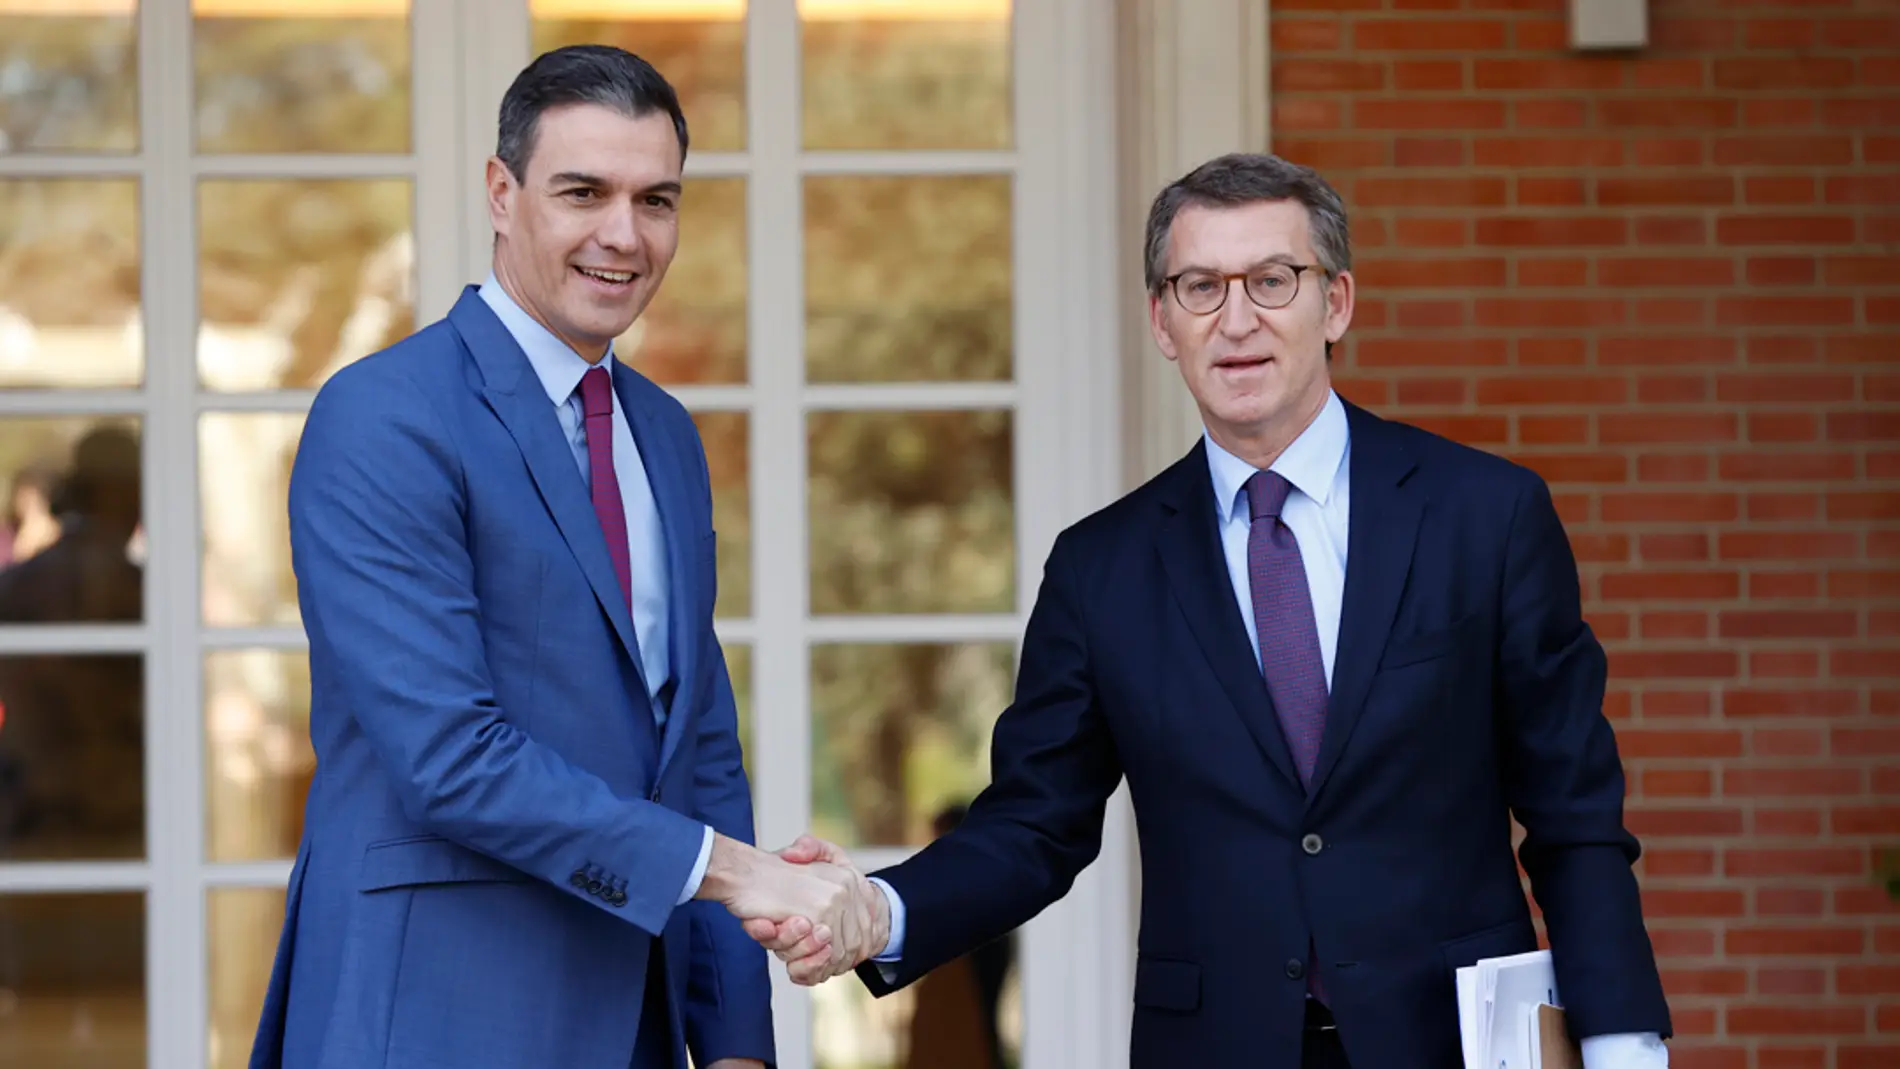 Sánchez y Feijóo se saludan antes de su reunión en La Moncloa/EFE